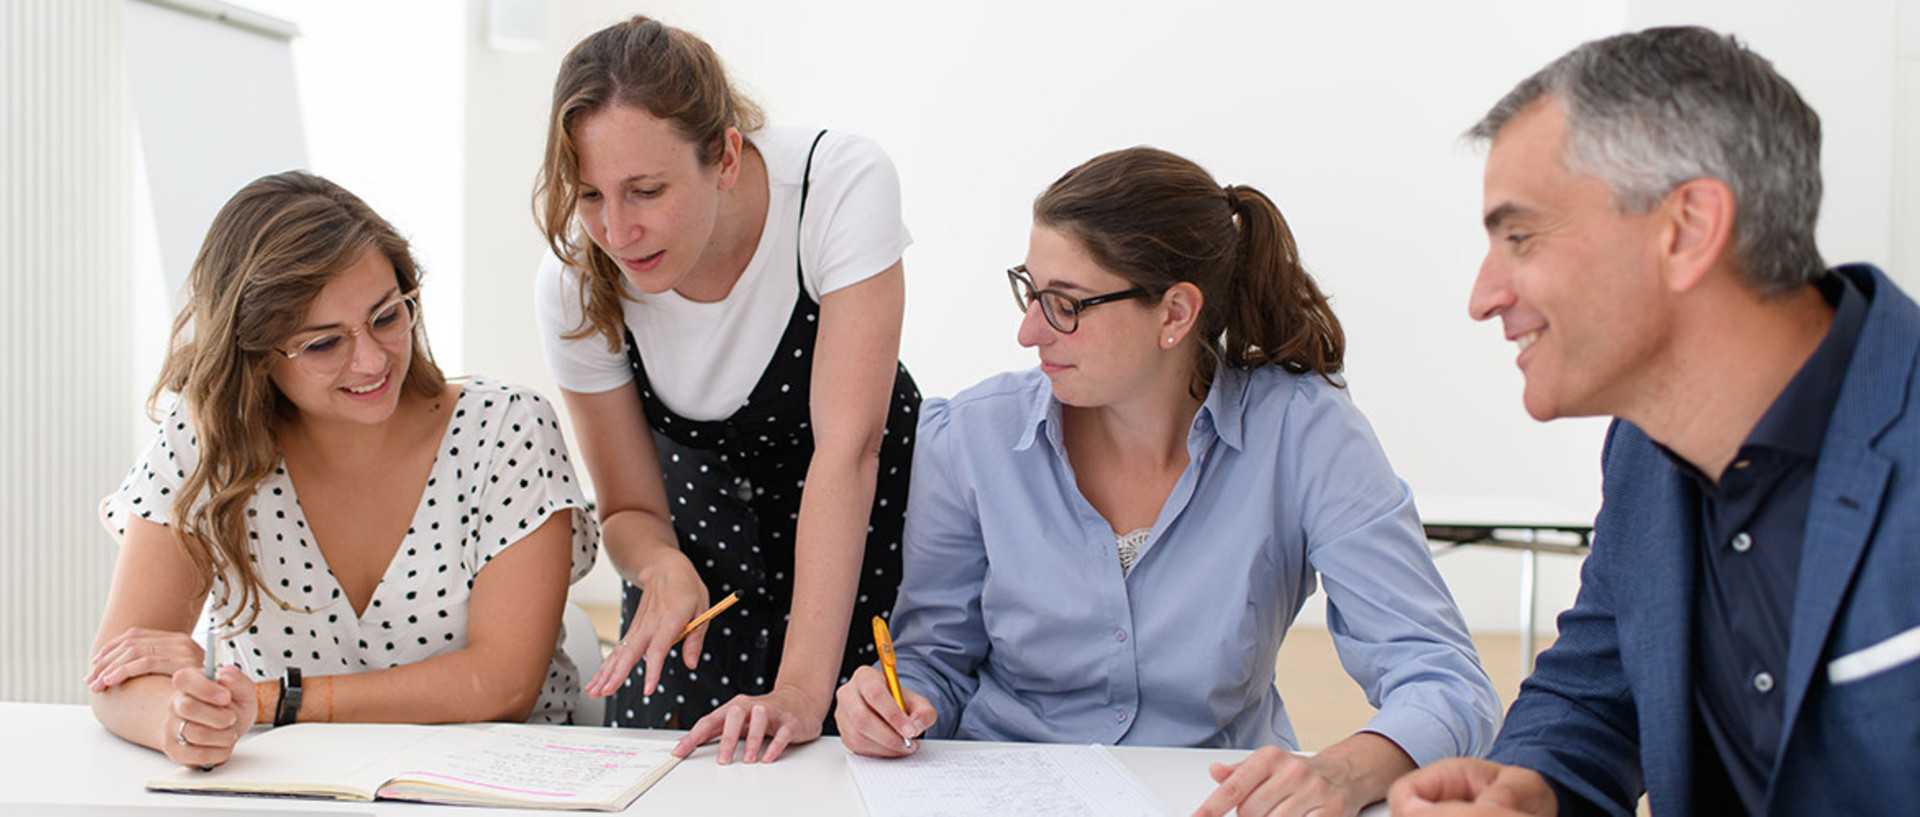 Zwei Forscherinnen und ein Forscher sitzen am Tisch, während eine Forscherin stehend Aufgeschriebens in einem Notizbuch erklärt